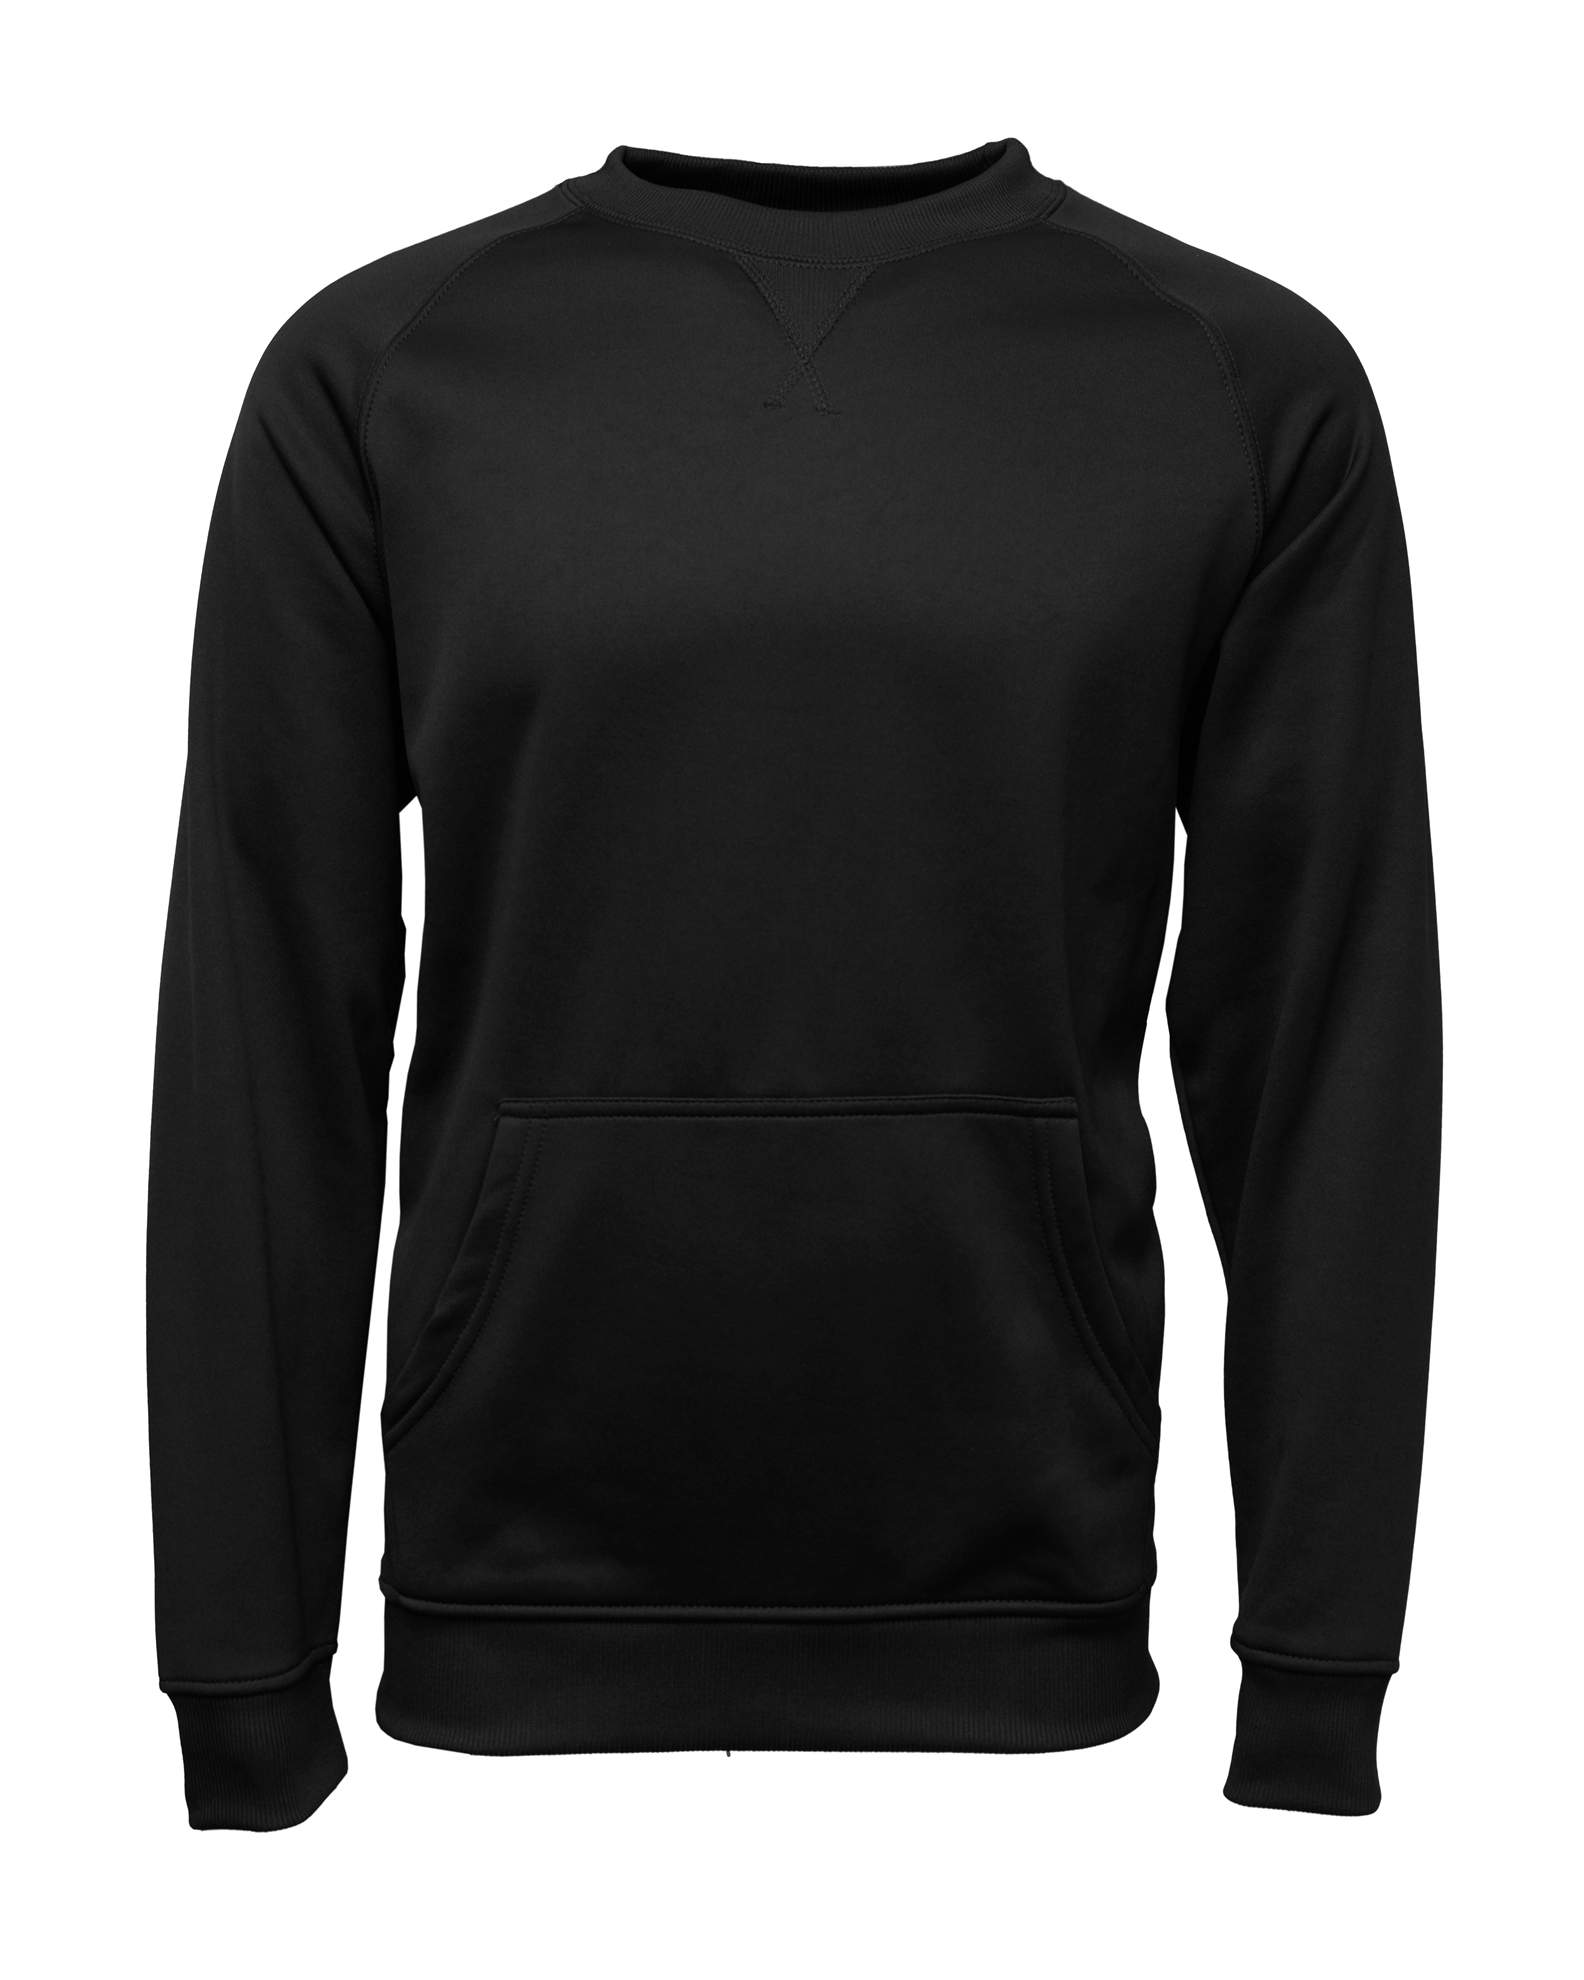 BAW Athletic Wear F300Y - Youth Pullover Crewneck Sweatshirt